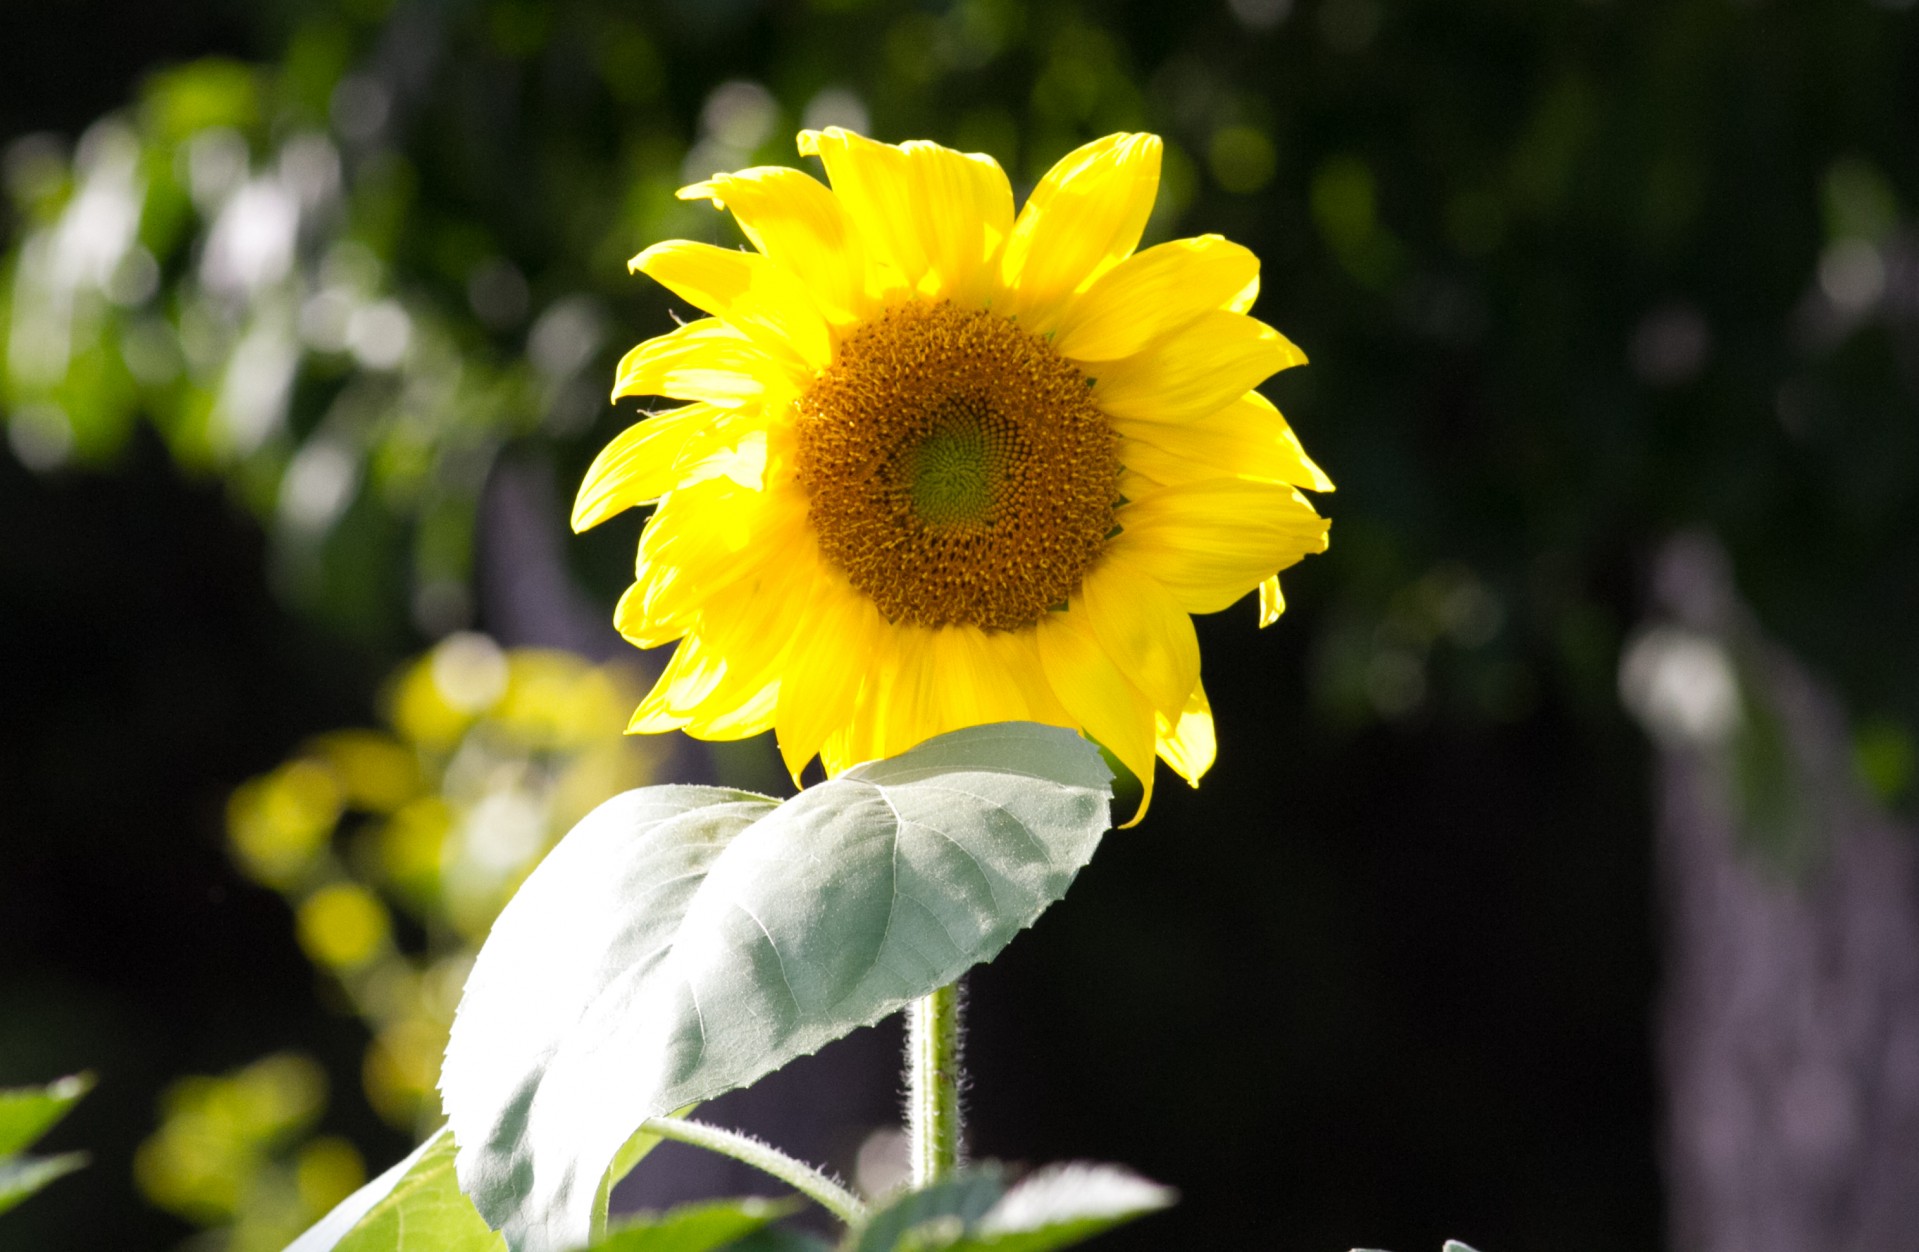 Sunflower lit by the sun